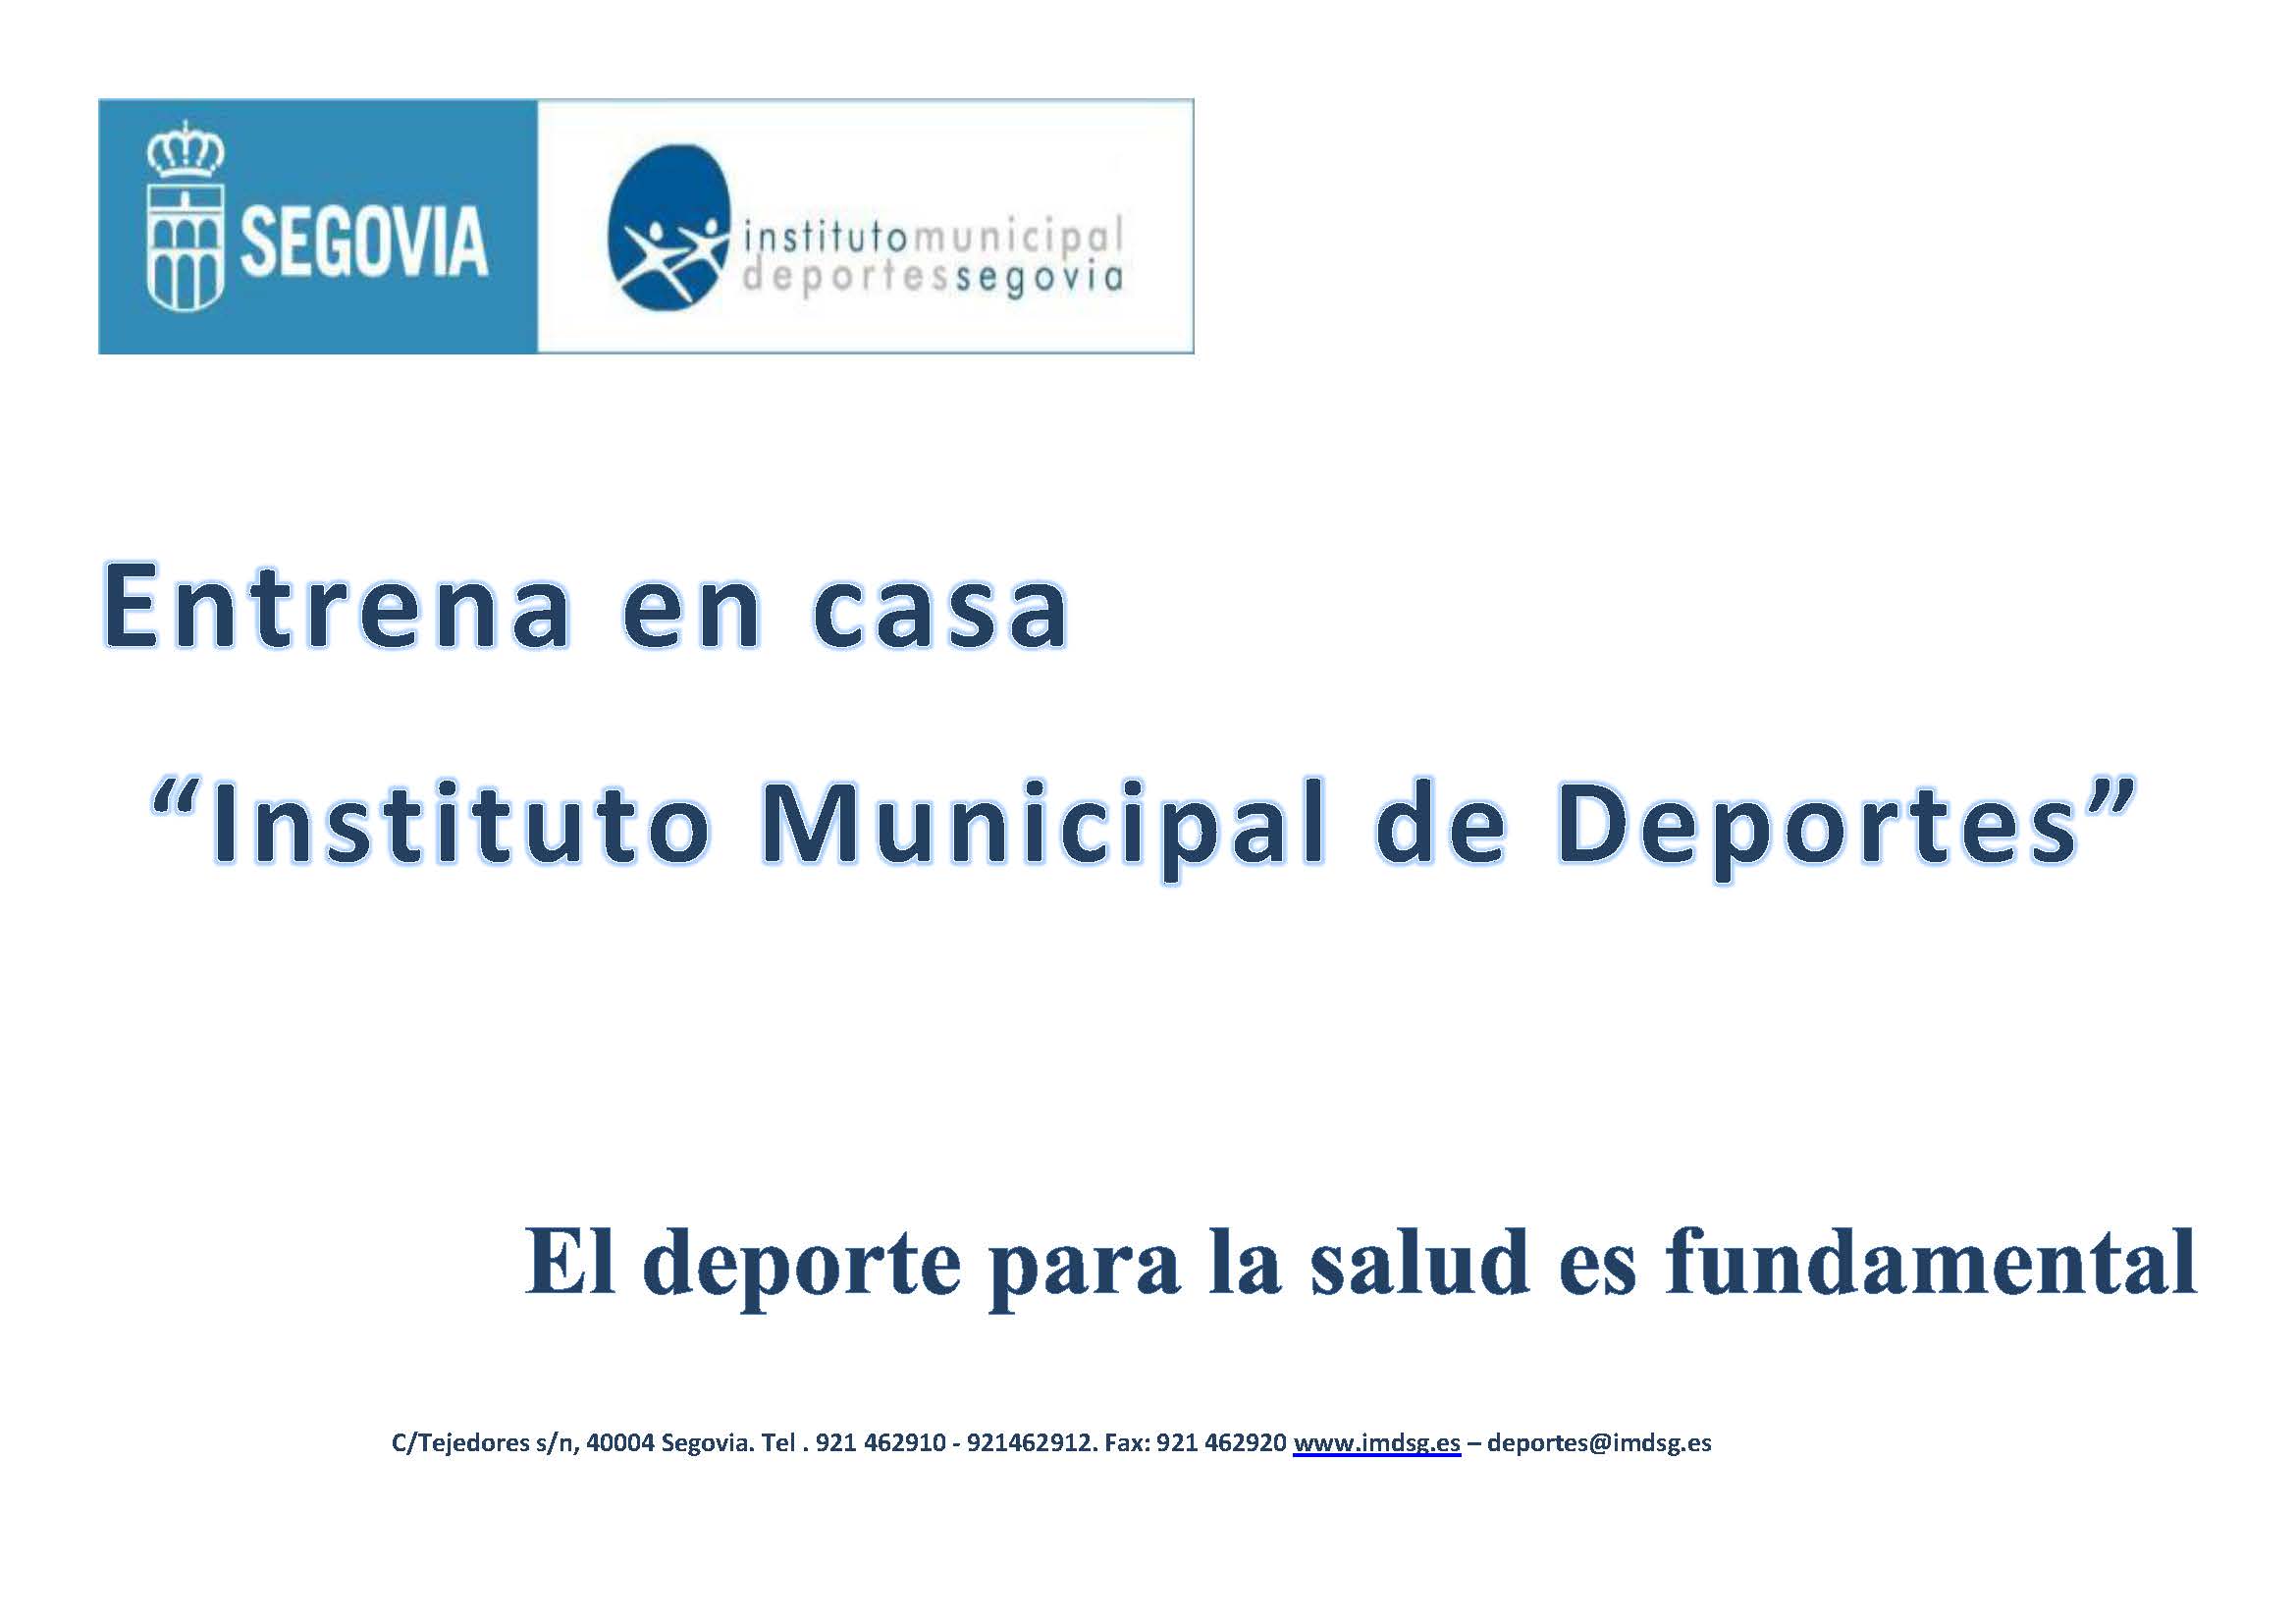 Entrena en casa con el Instituto Municipal de Deportes de Segovia (2)